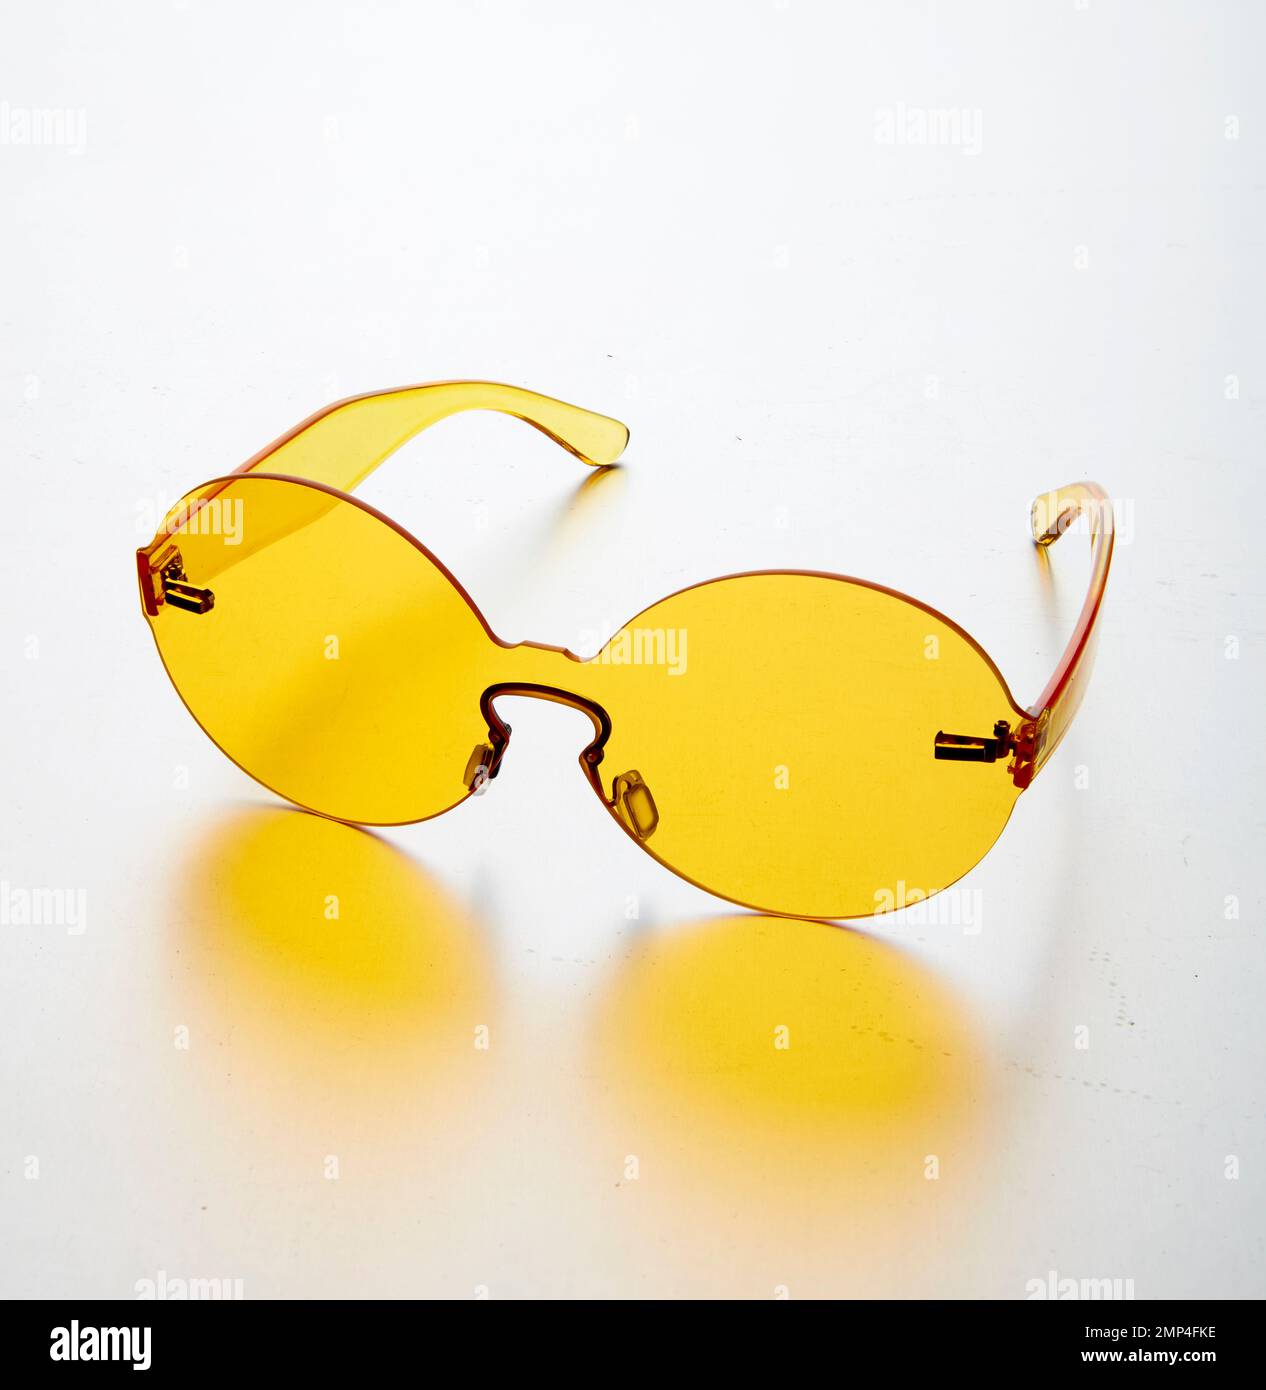 Farbige Kunststoff Sonnenbrille Mode-Artikel trendy einfaches Design Designerfarben groovige 70er Jahre Stil hippe hippe runde ikonische intensive Brille Stockfoto